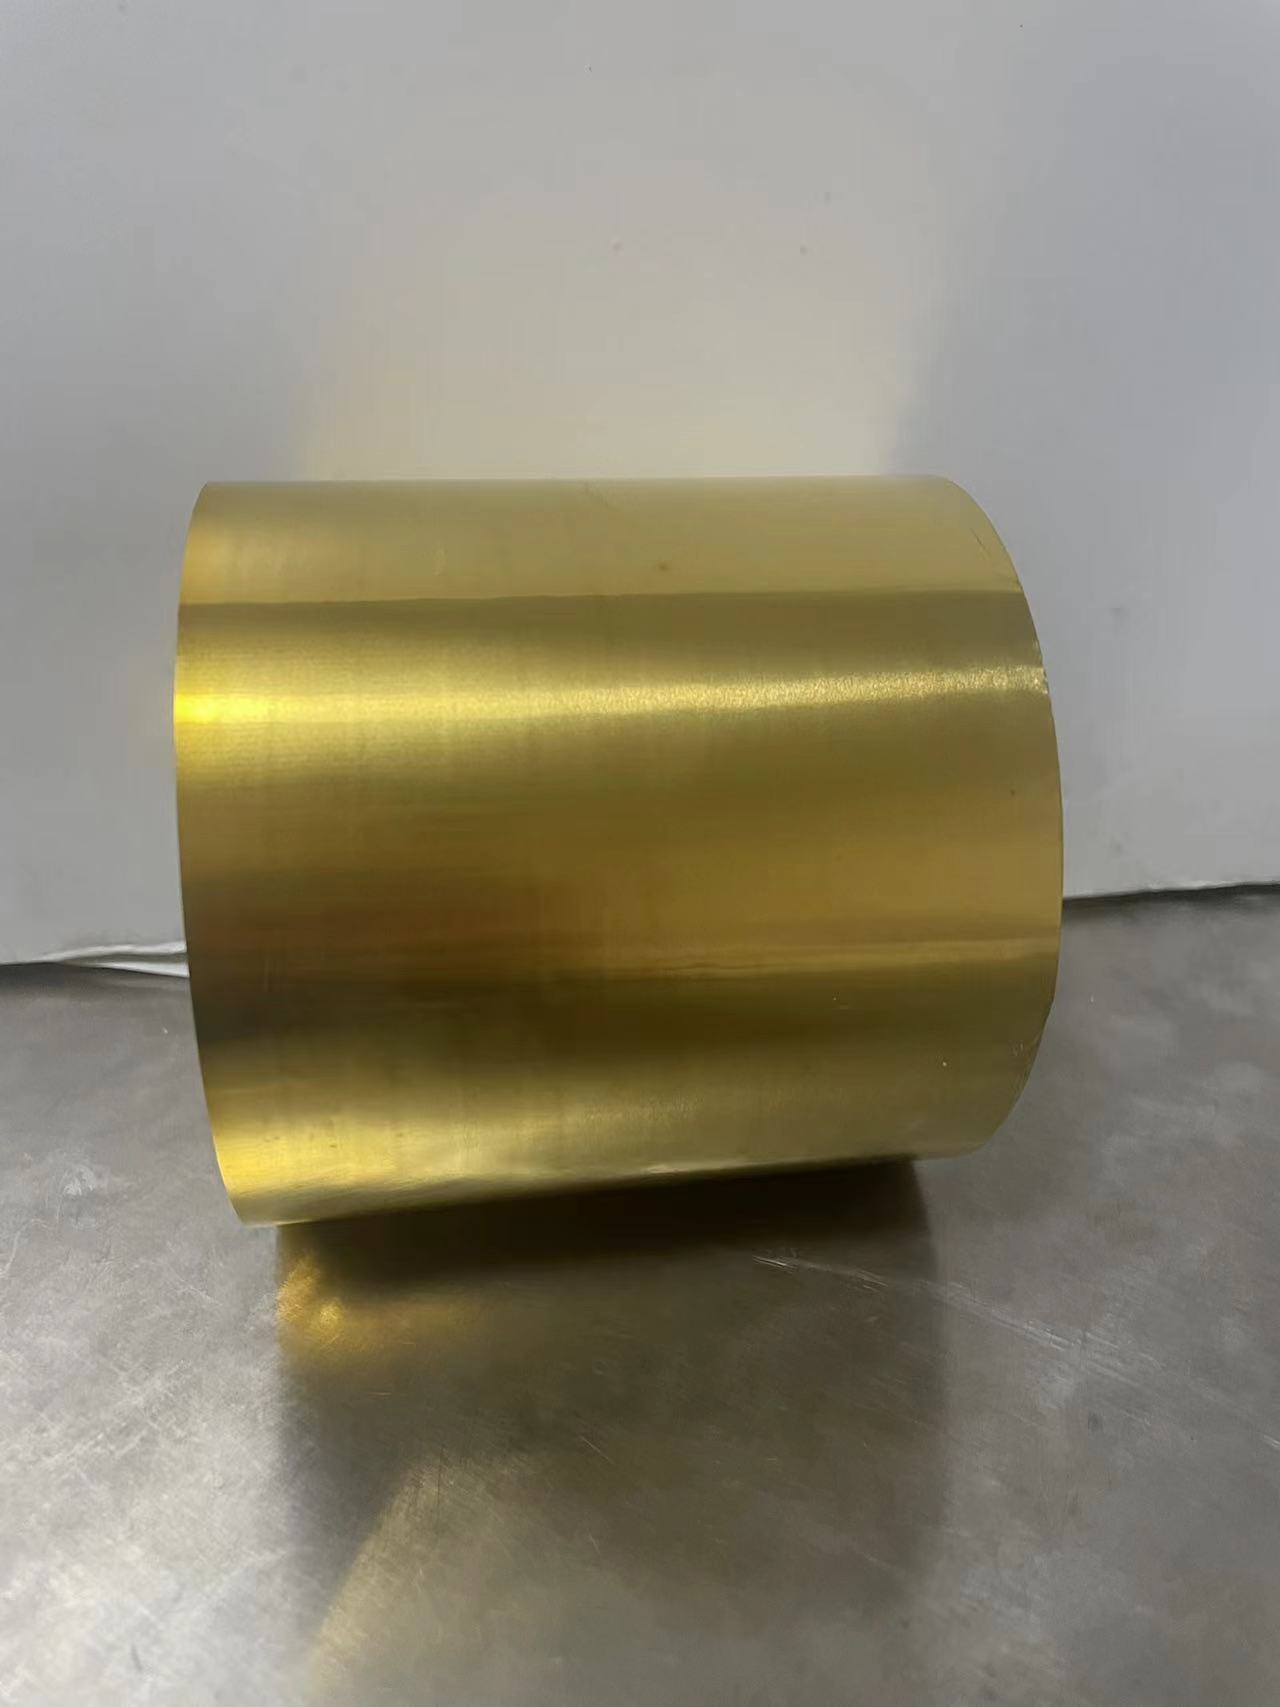 黄金箔 黄金钎料 黄金材料 黄金焊丝图片